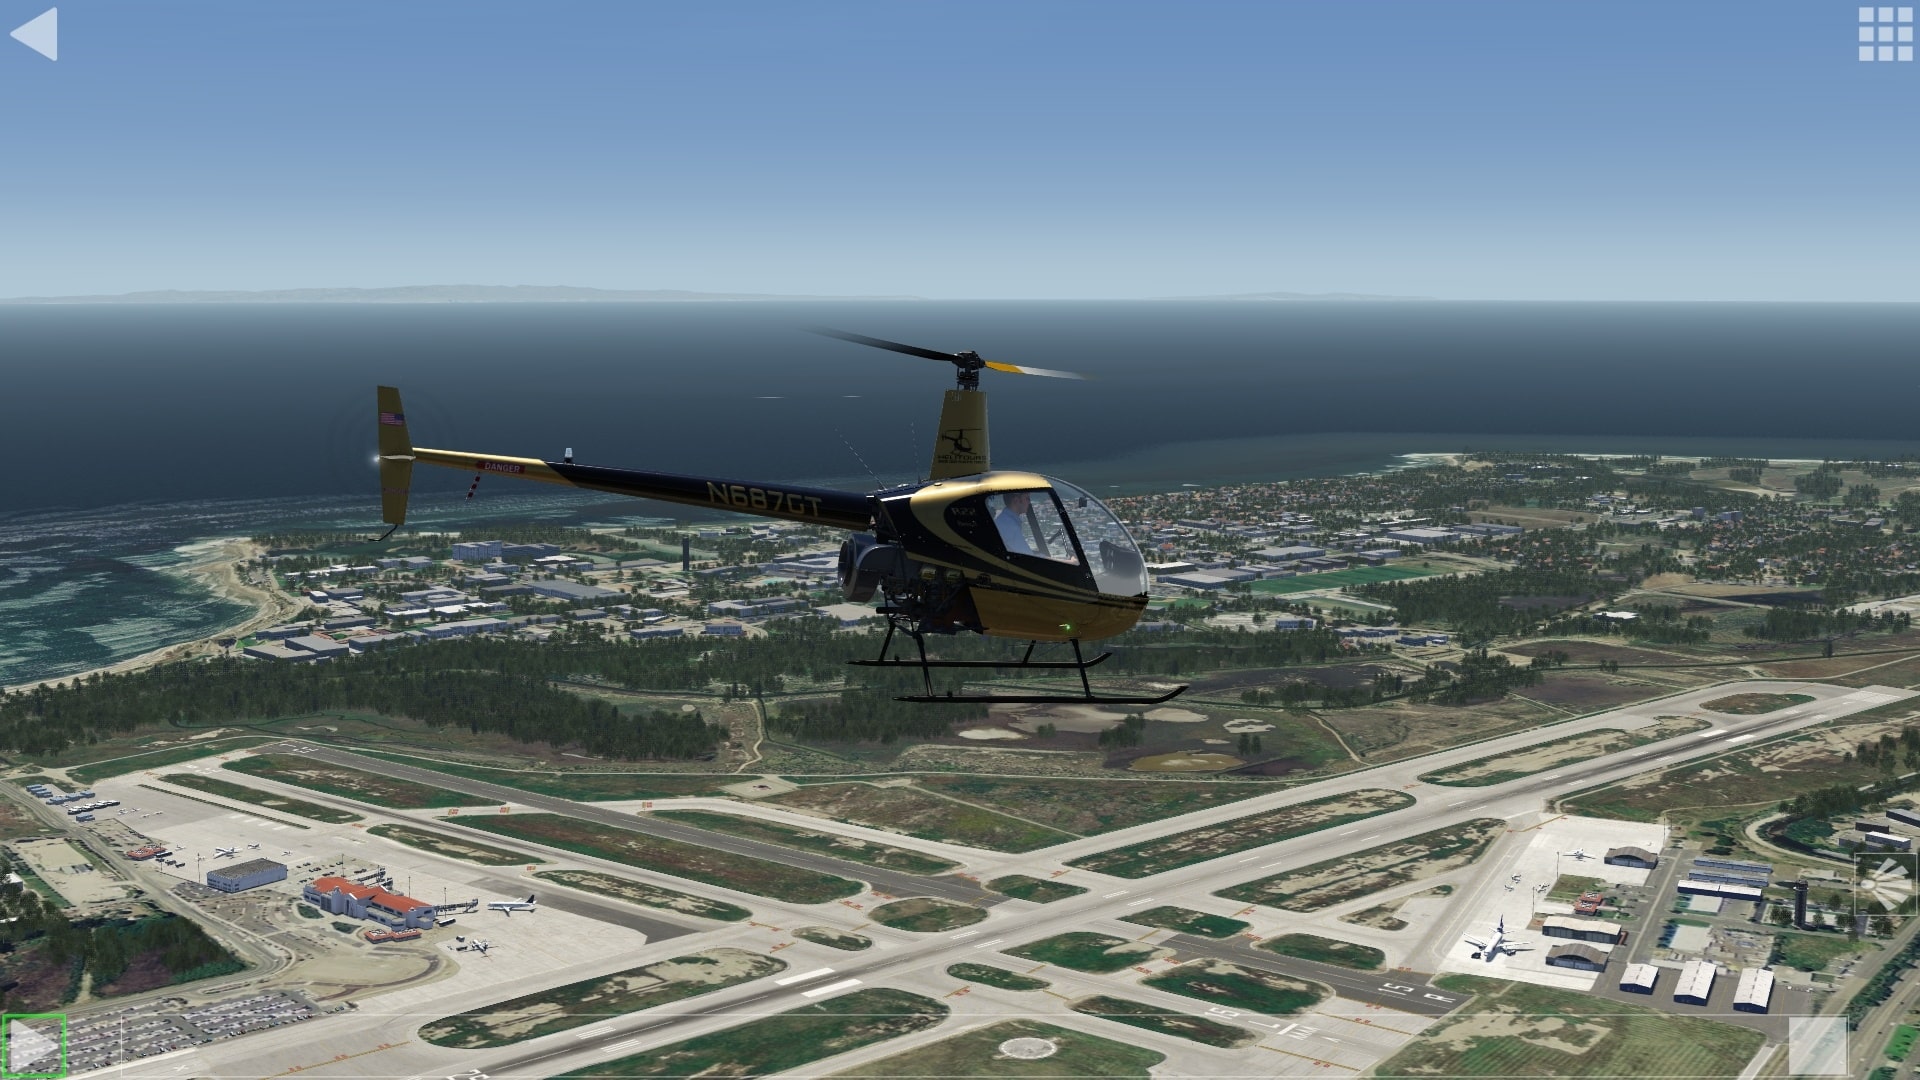 (Replay de mon tout premier vol en hélicoptère simulé depuis des jours de PlayStation 1. J''en suis encore très fier. Le modèle de vol de la version Aerofly FS du Robinson R22 est également utilisé en Suisse dans un dispositif de formation par simulation de vol certifié par l''EASA)